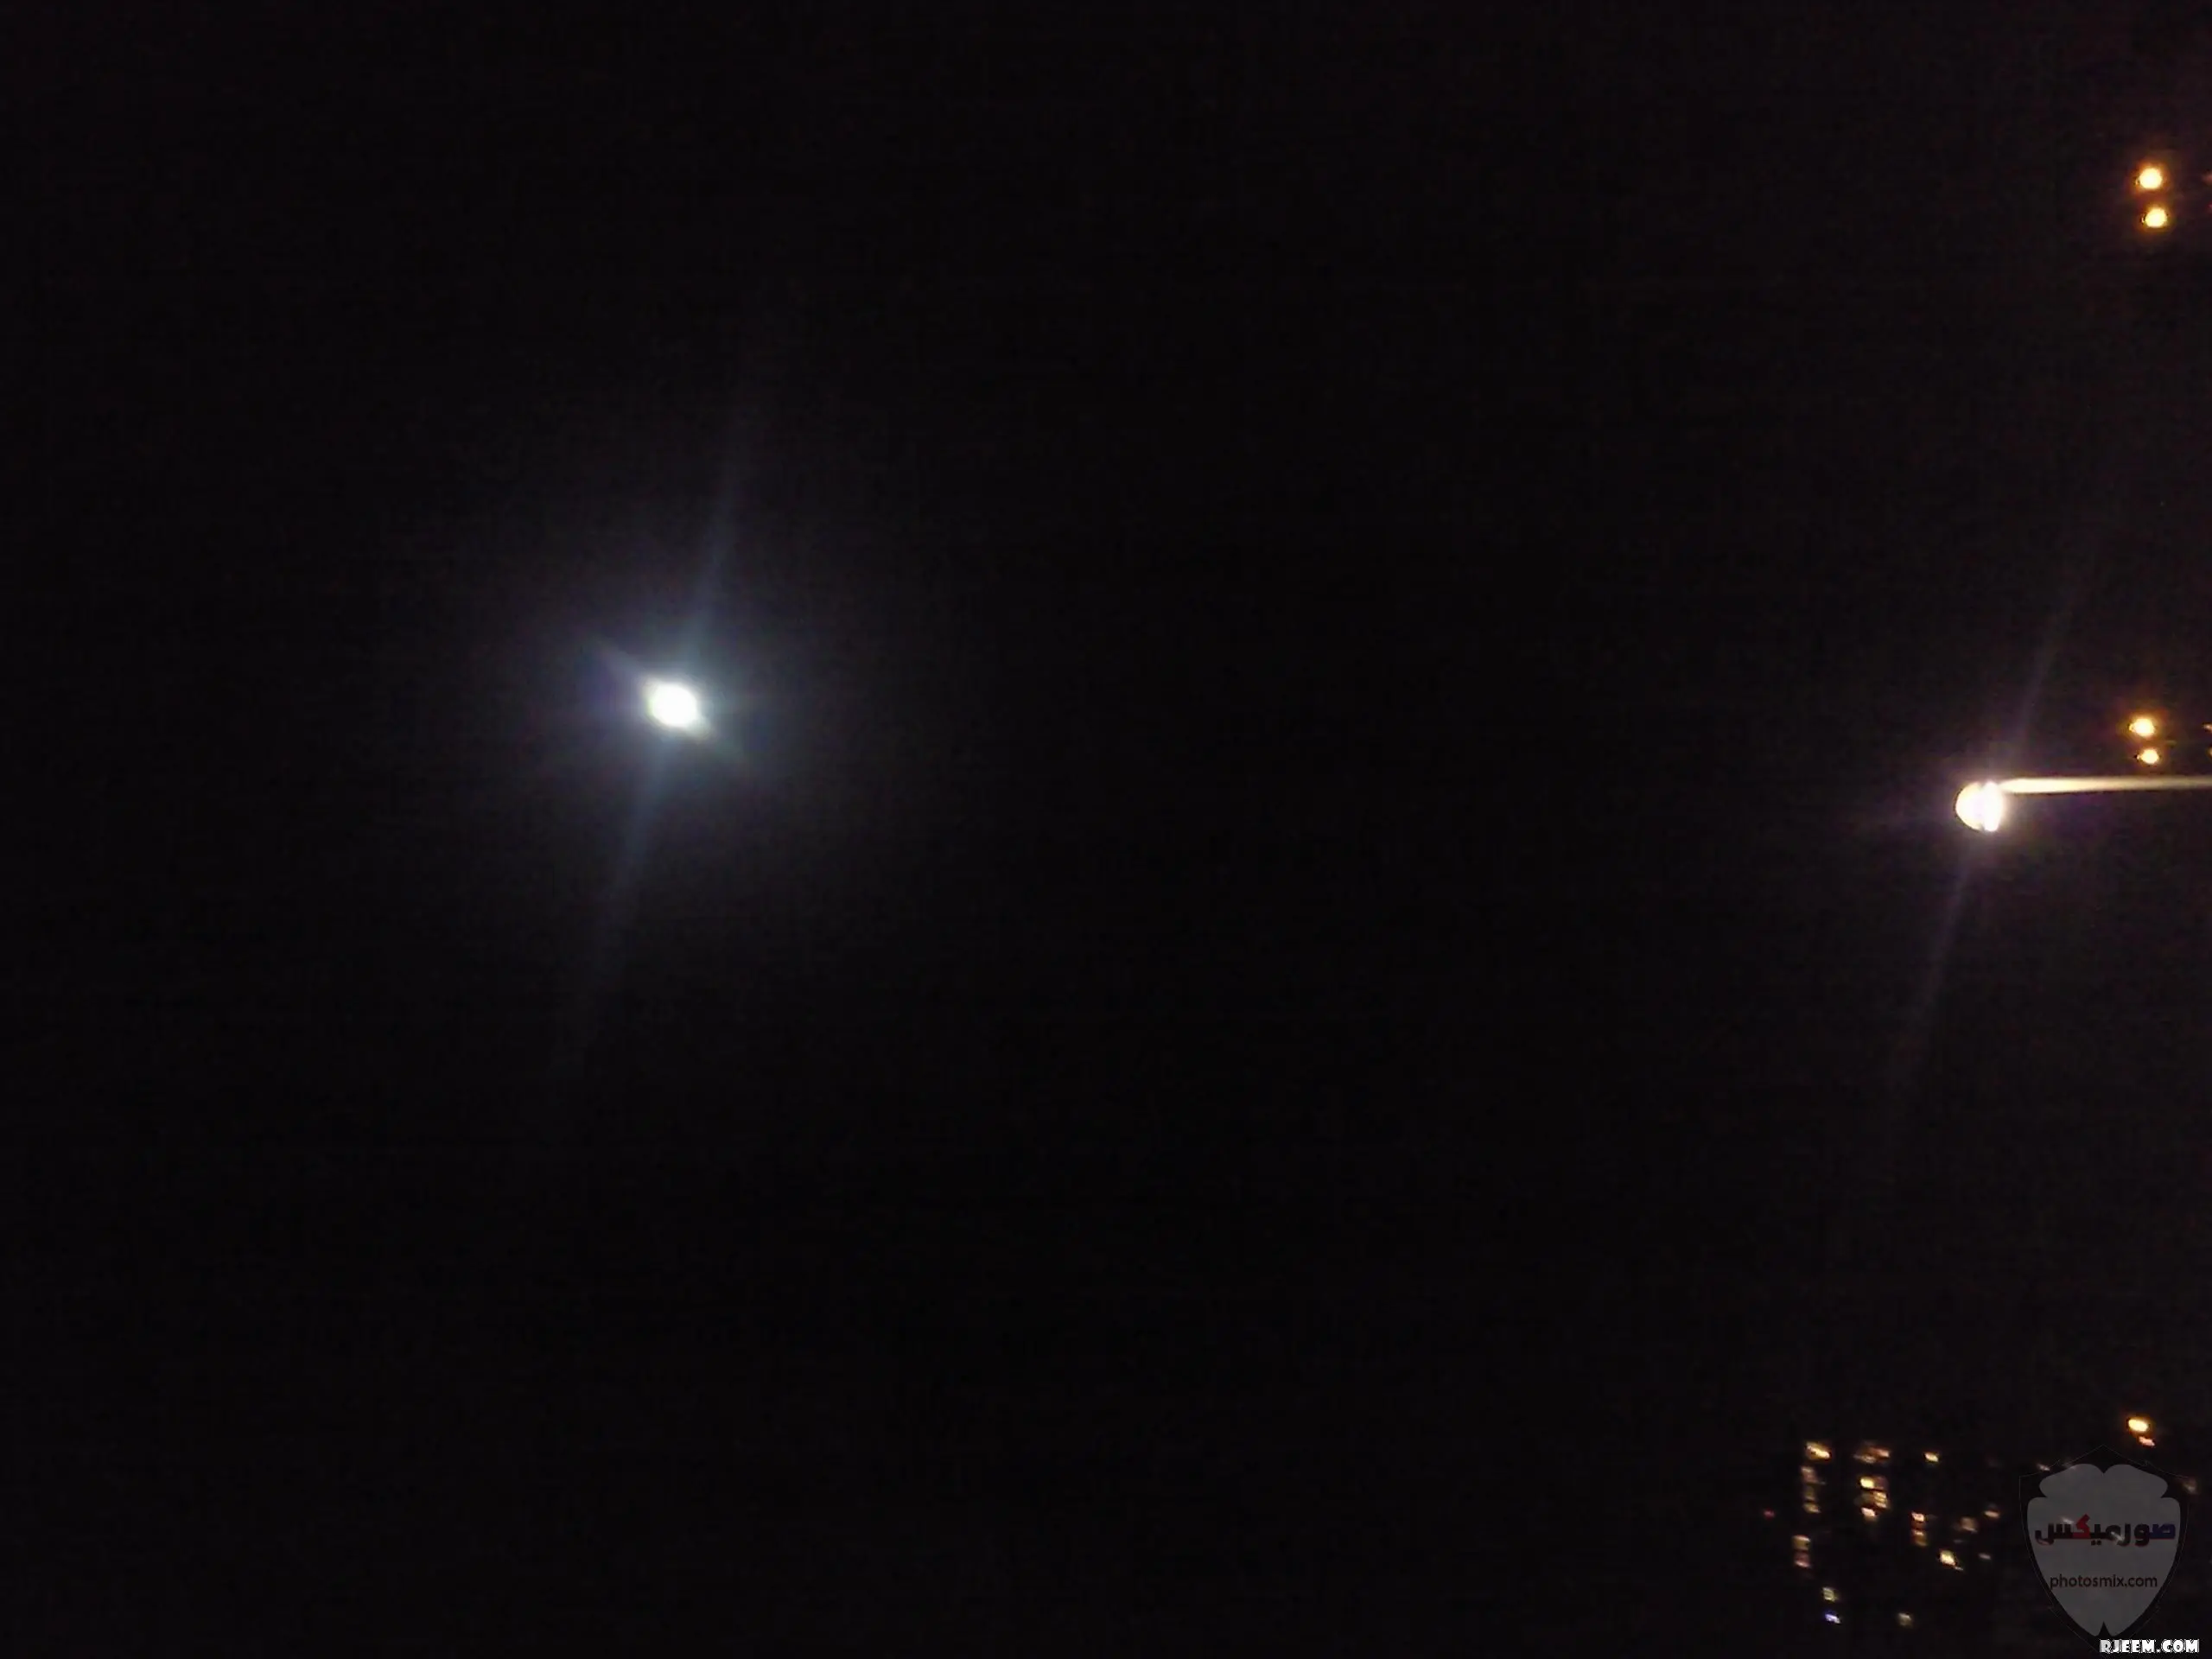 صور القمر العملاق رمزيات عن القمر العملاق صور قمر وسط النجوم 5